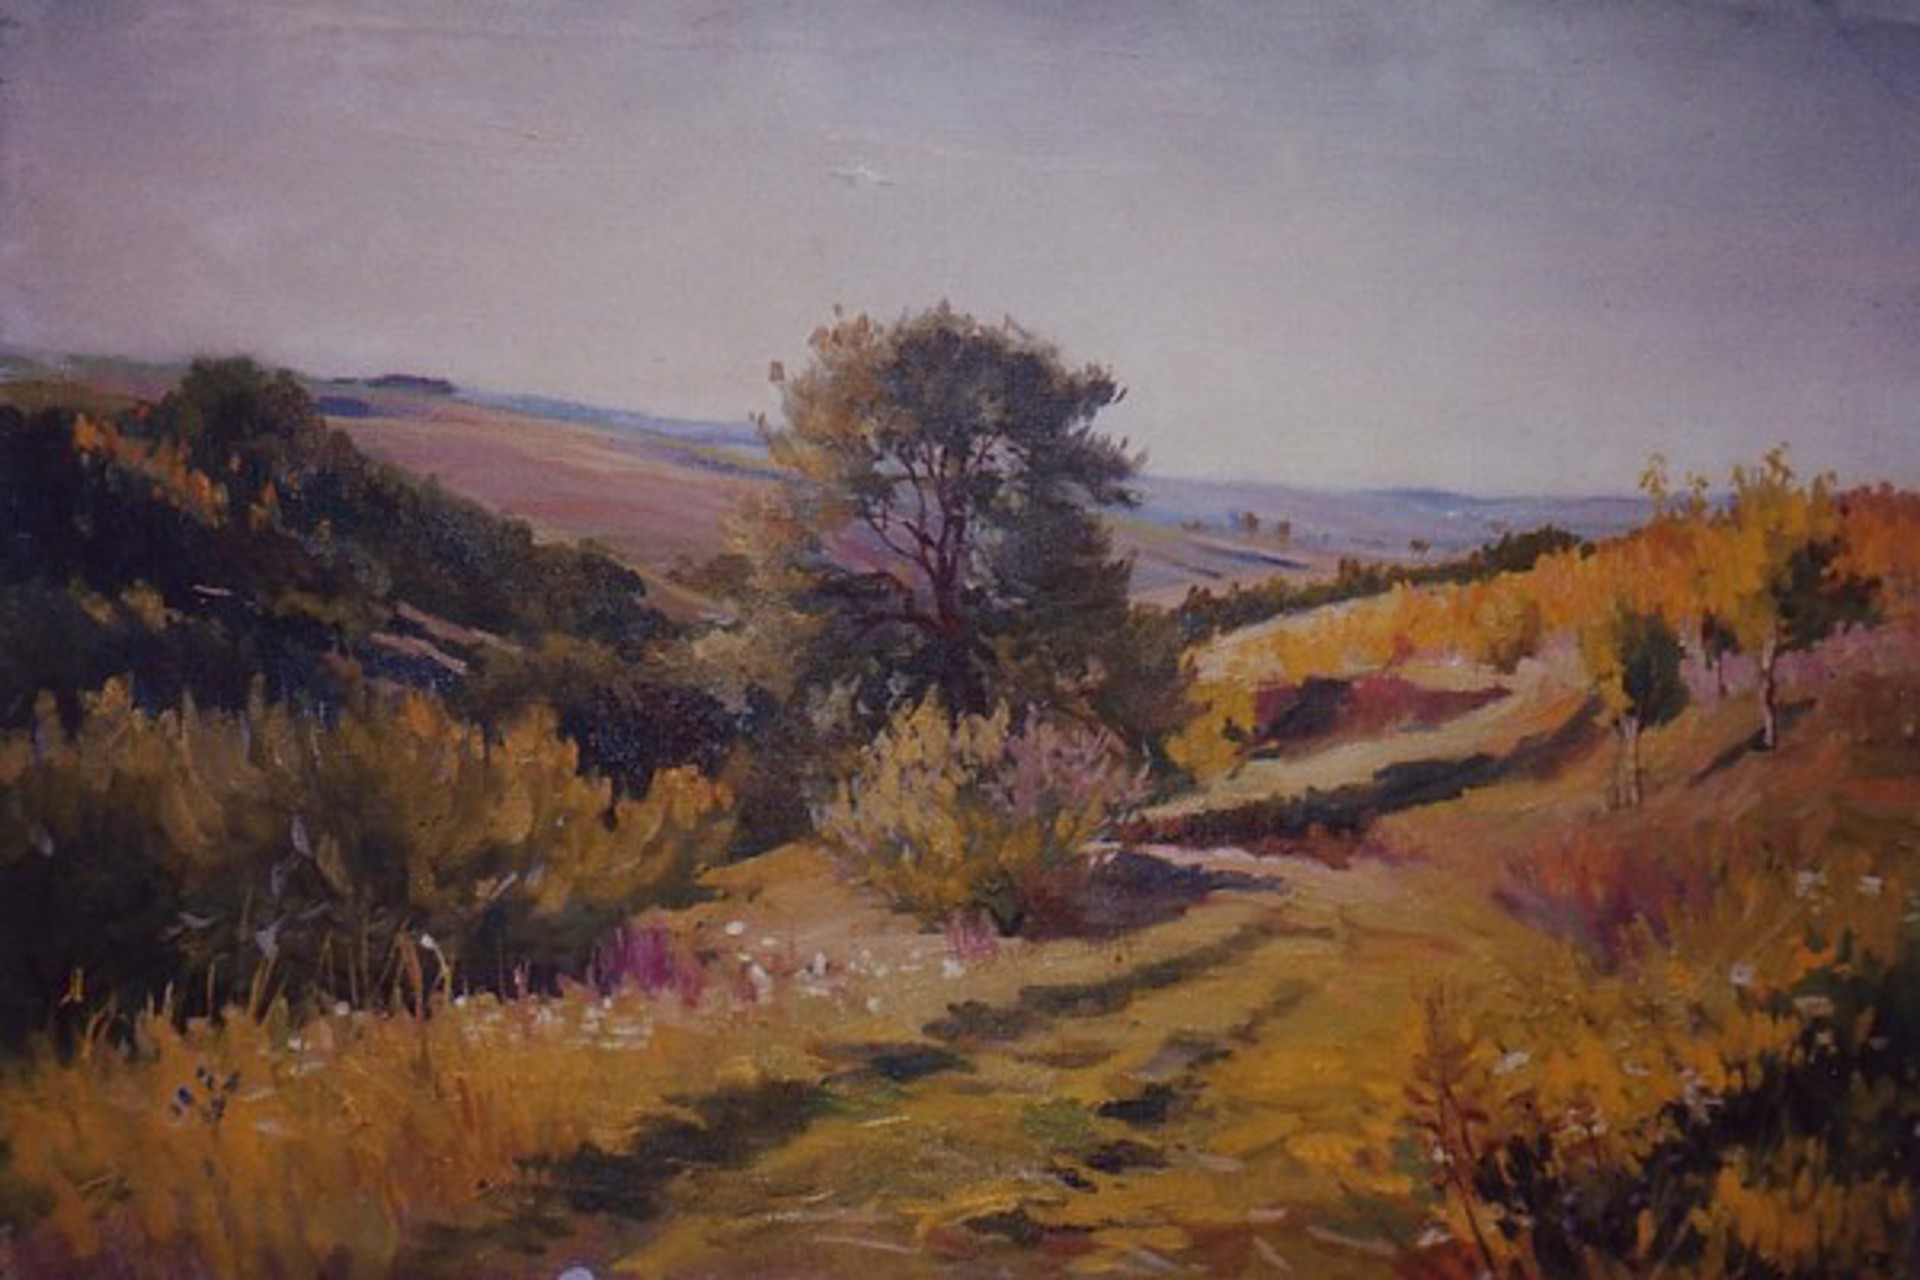 Country Lane by Vladimir Masik